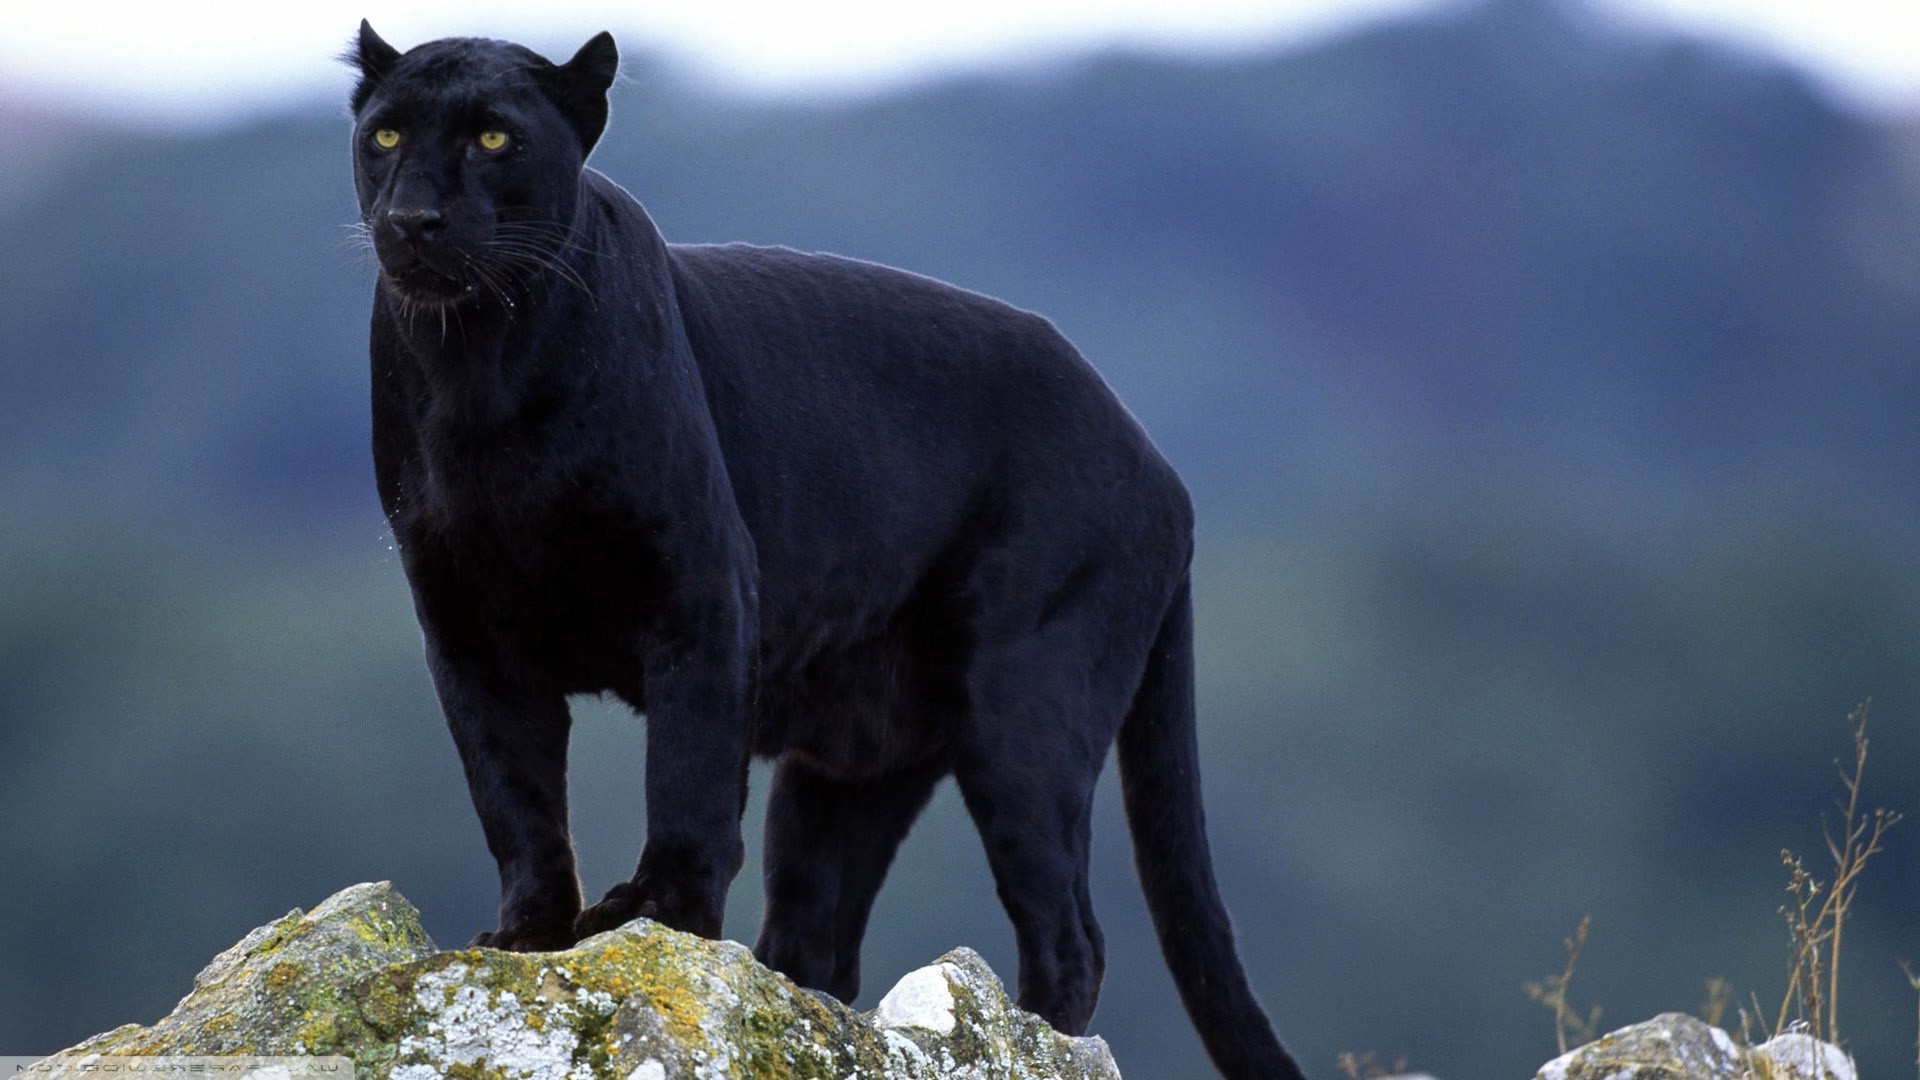 panthers, Big Cats, Animals, Black Panther, Nature ...